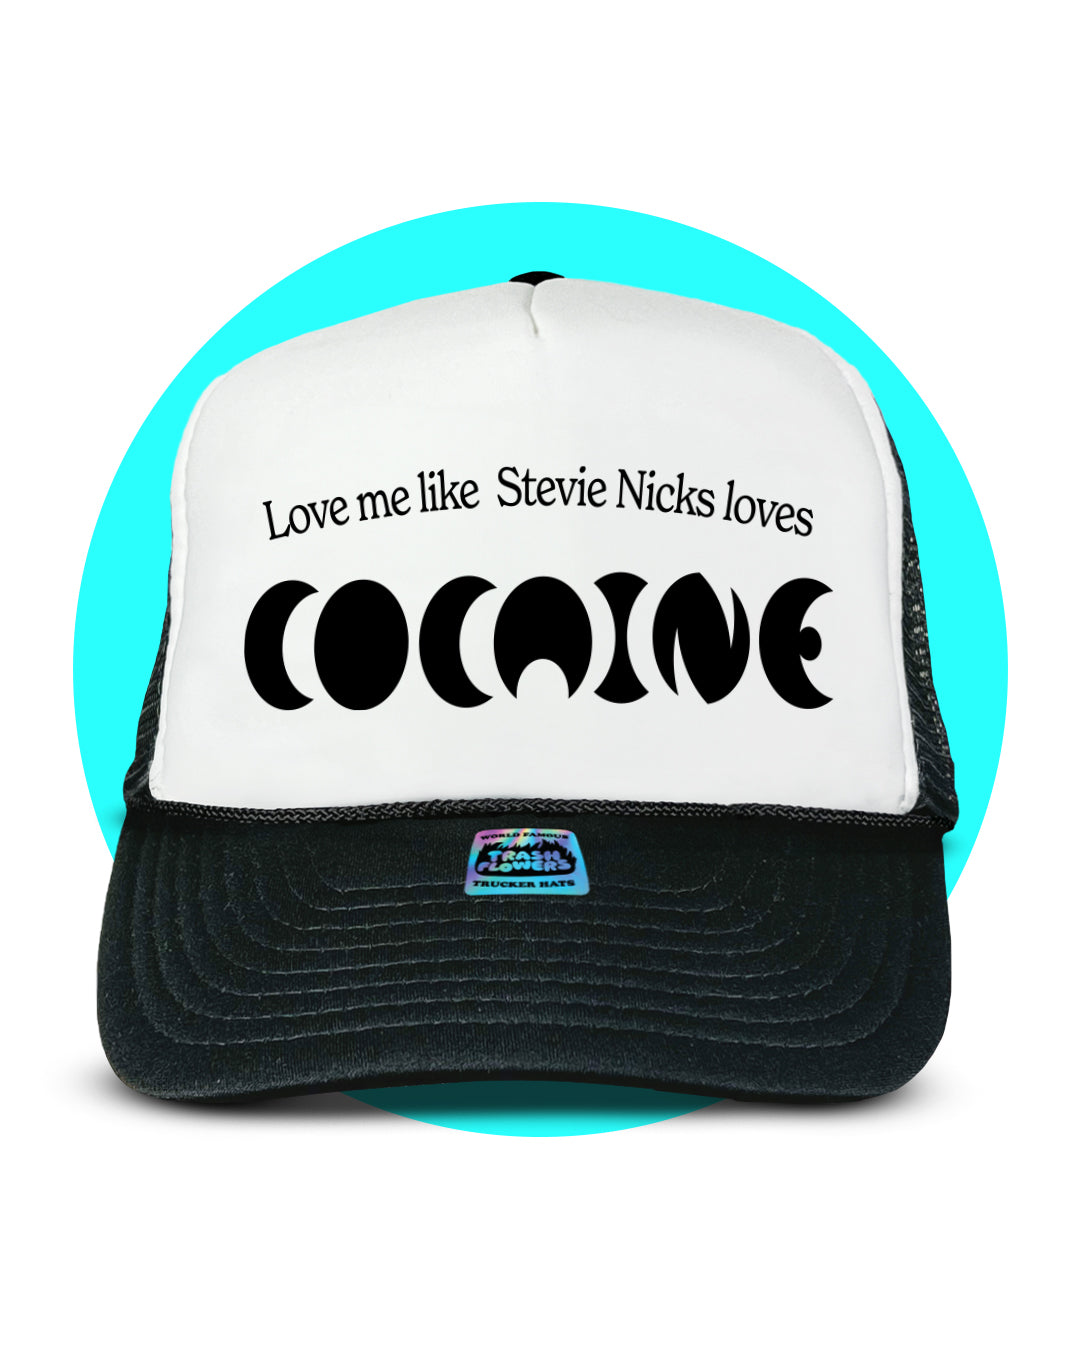 Love me like Stevie Nicks Trucker Hat